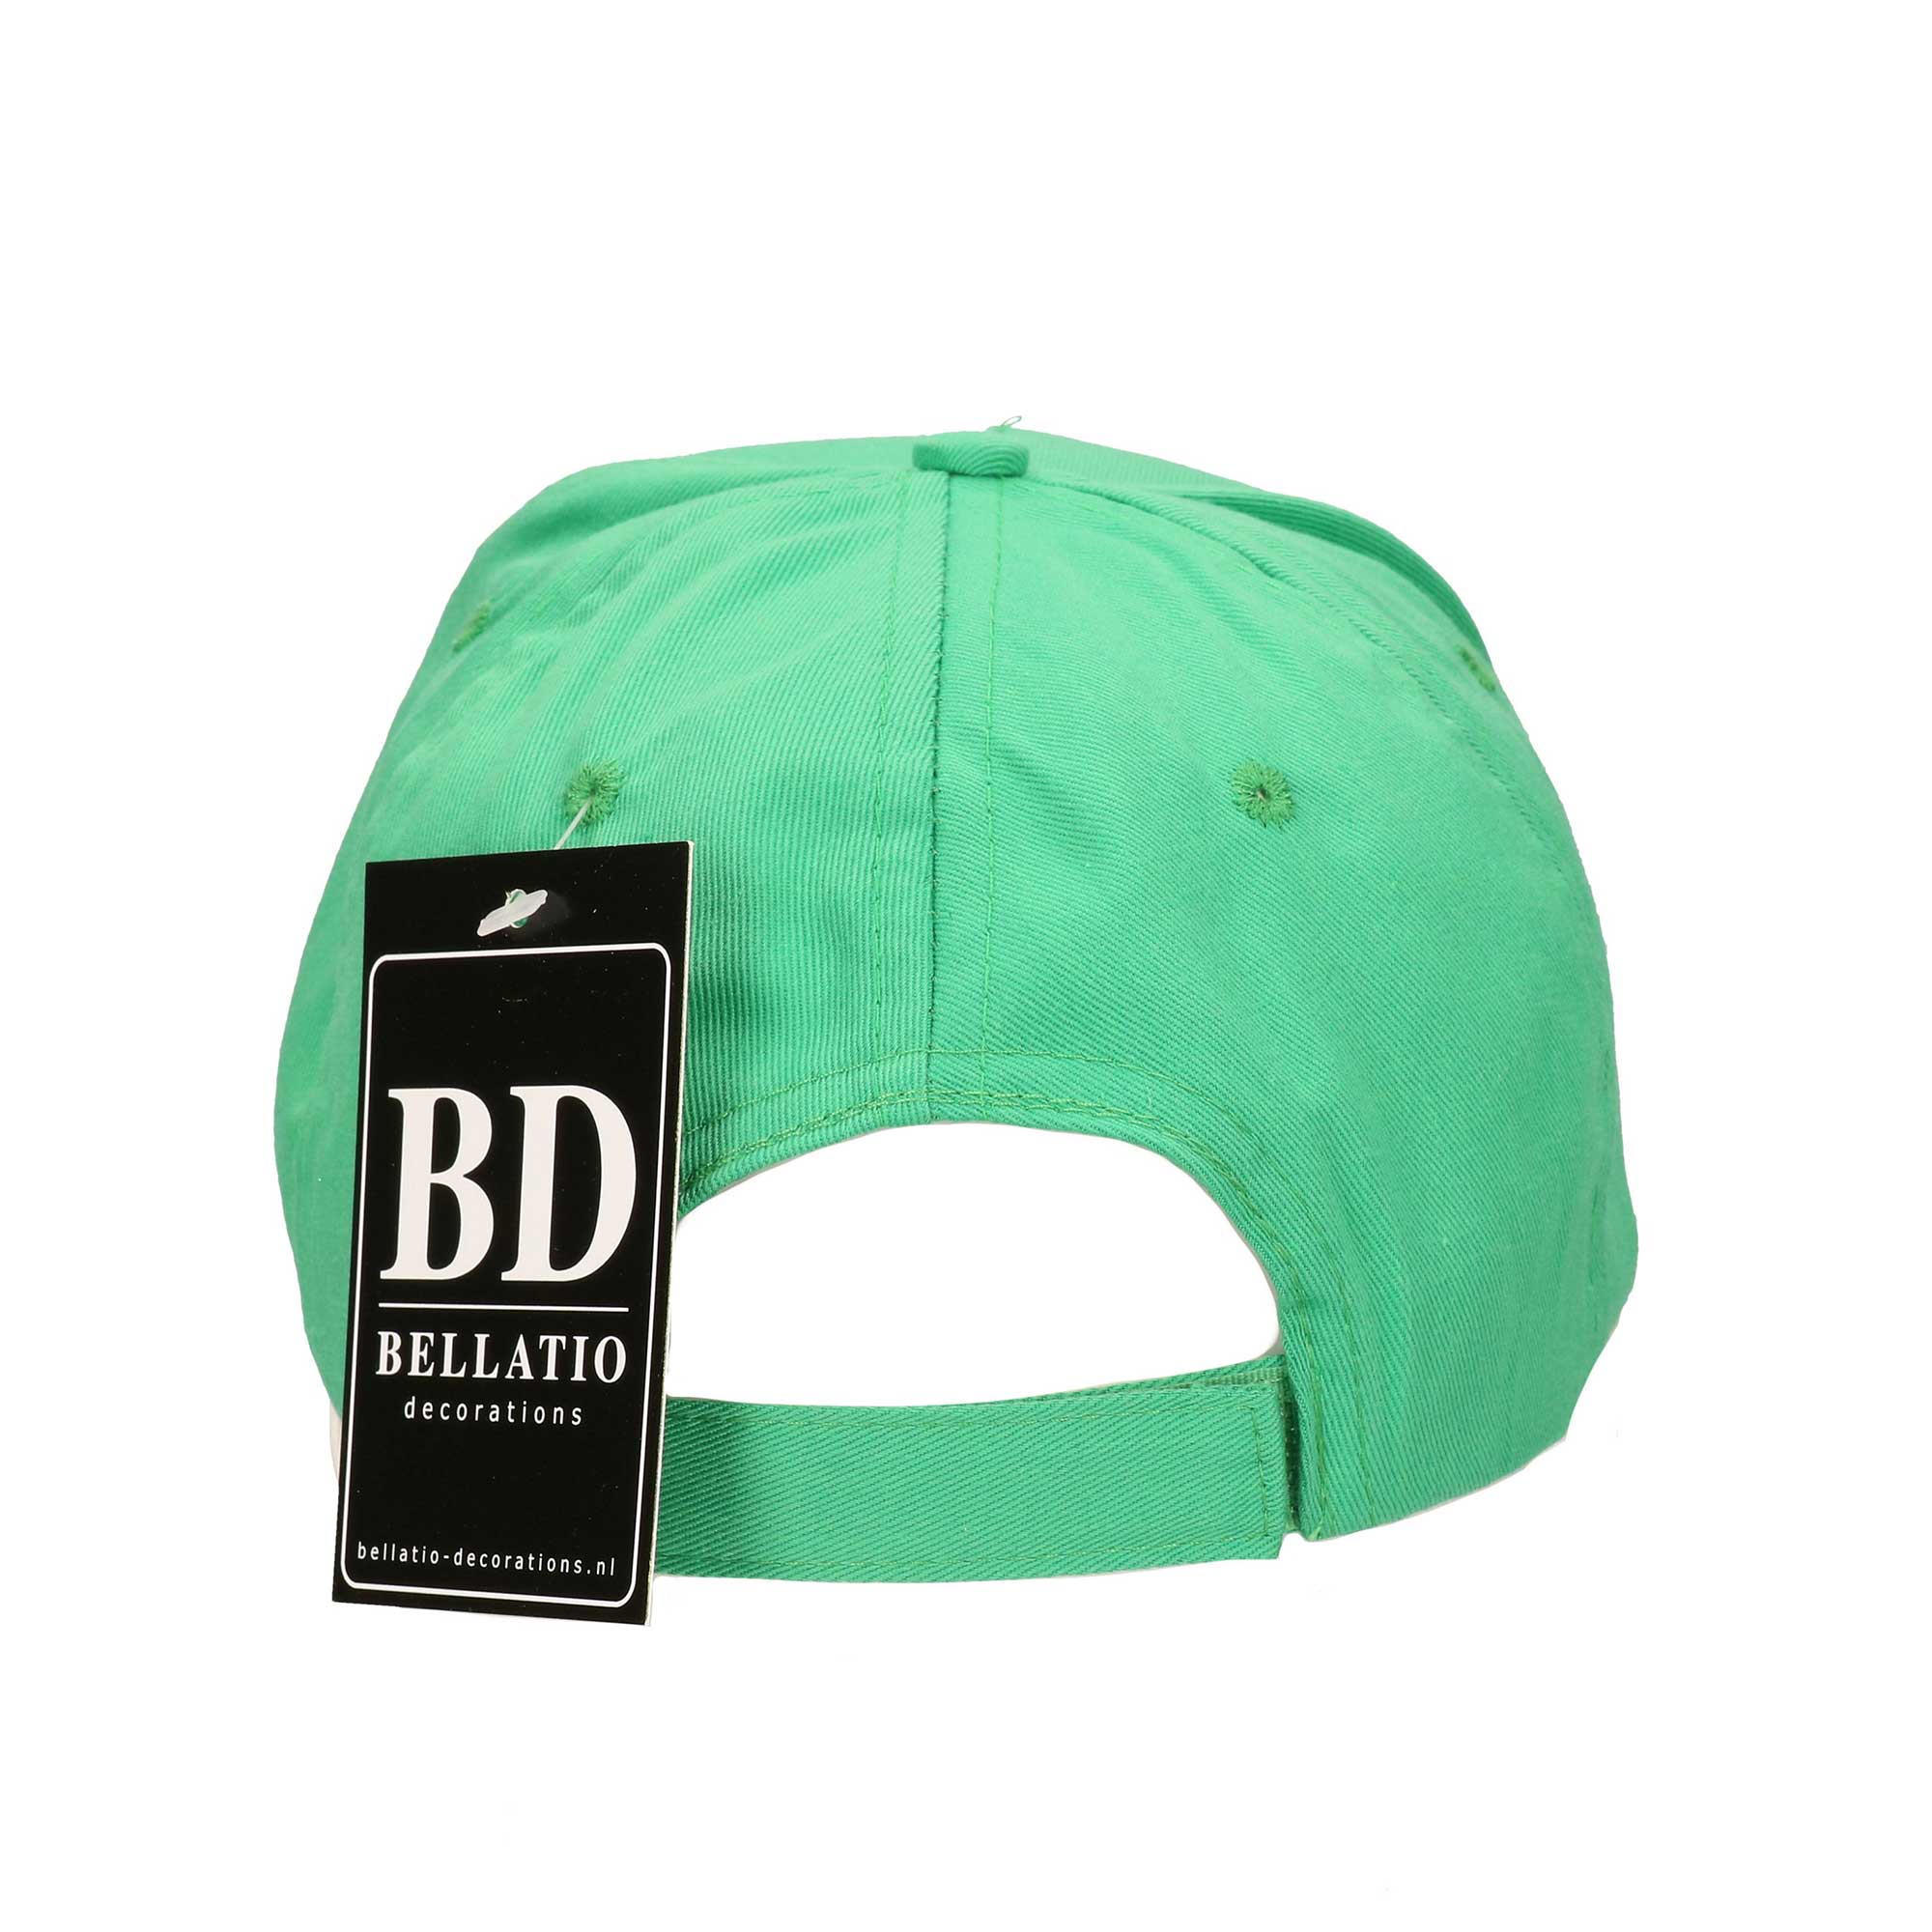 Letter M pet / cap groen voor volwassenen - verkleed / carnaval baseball cap